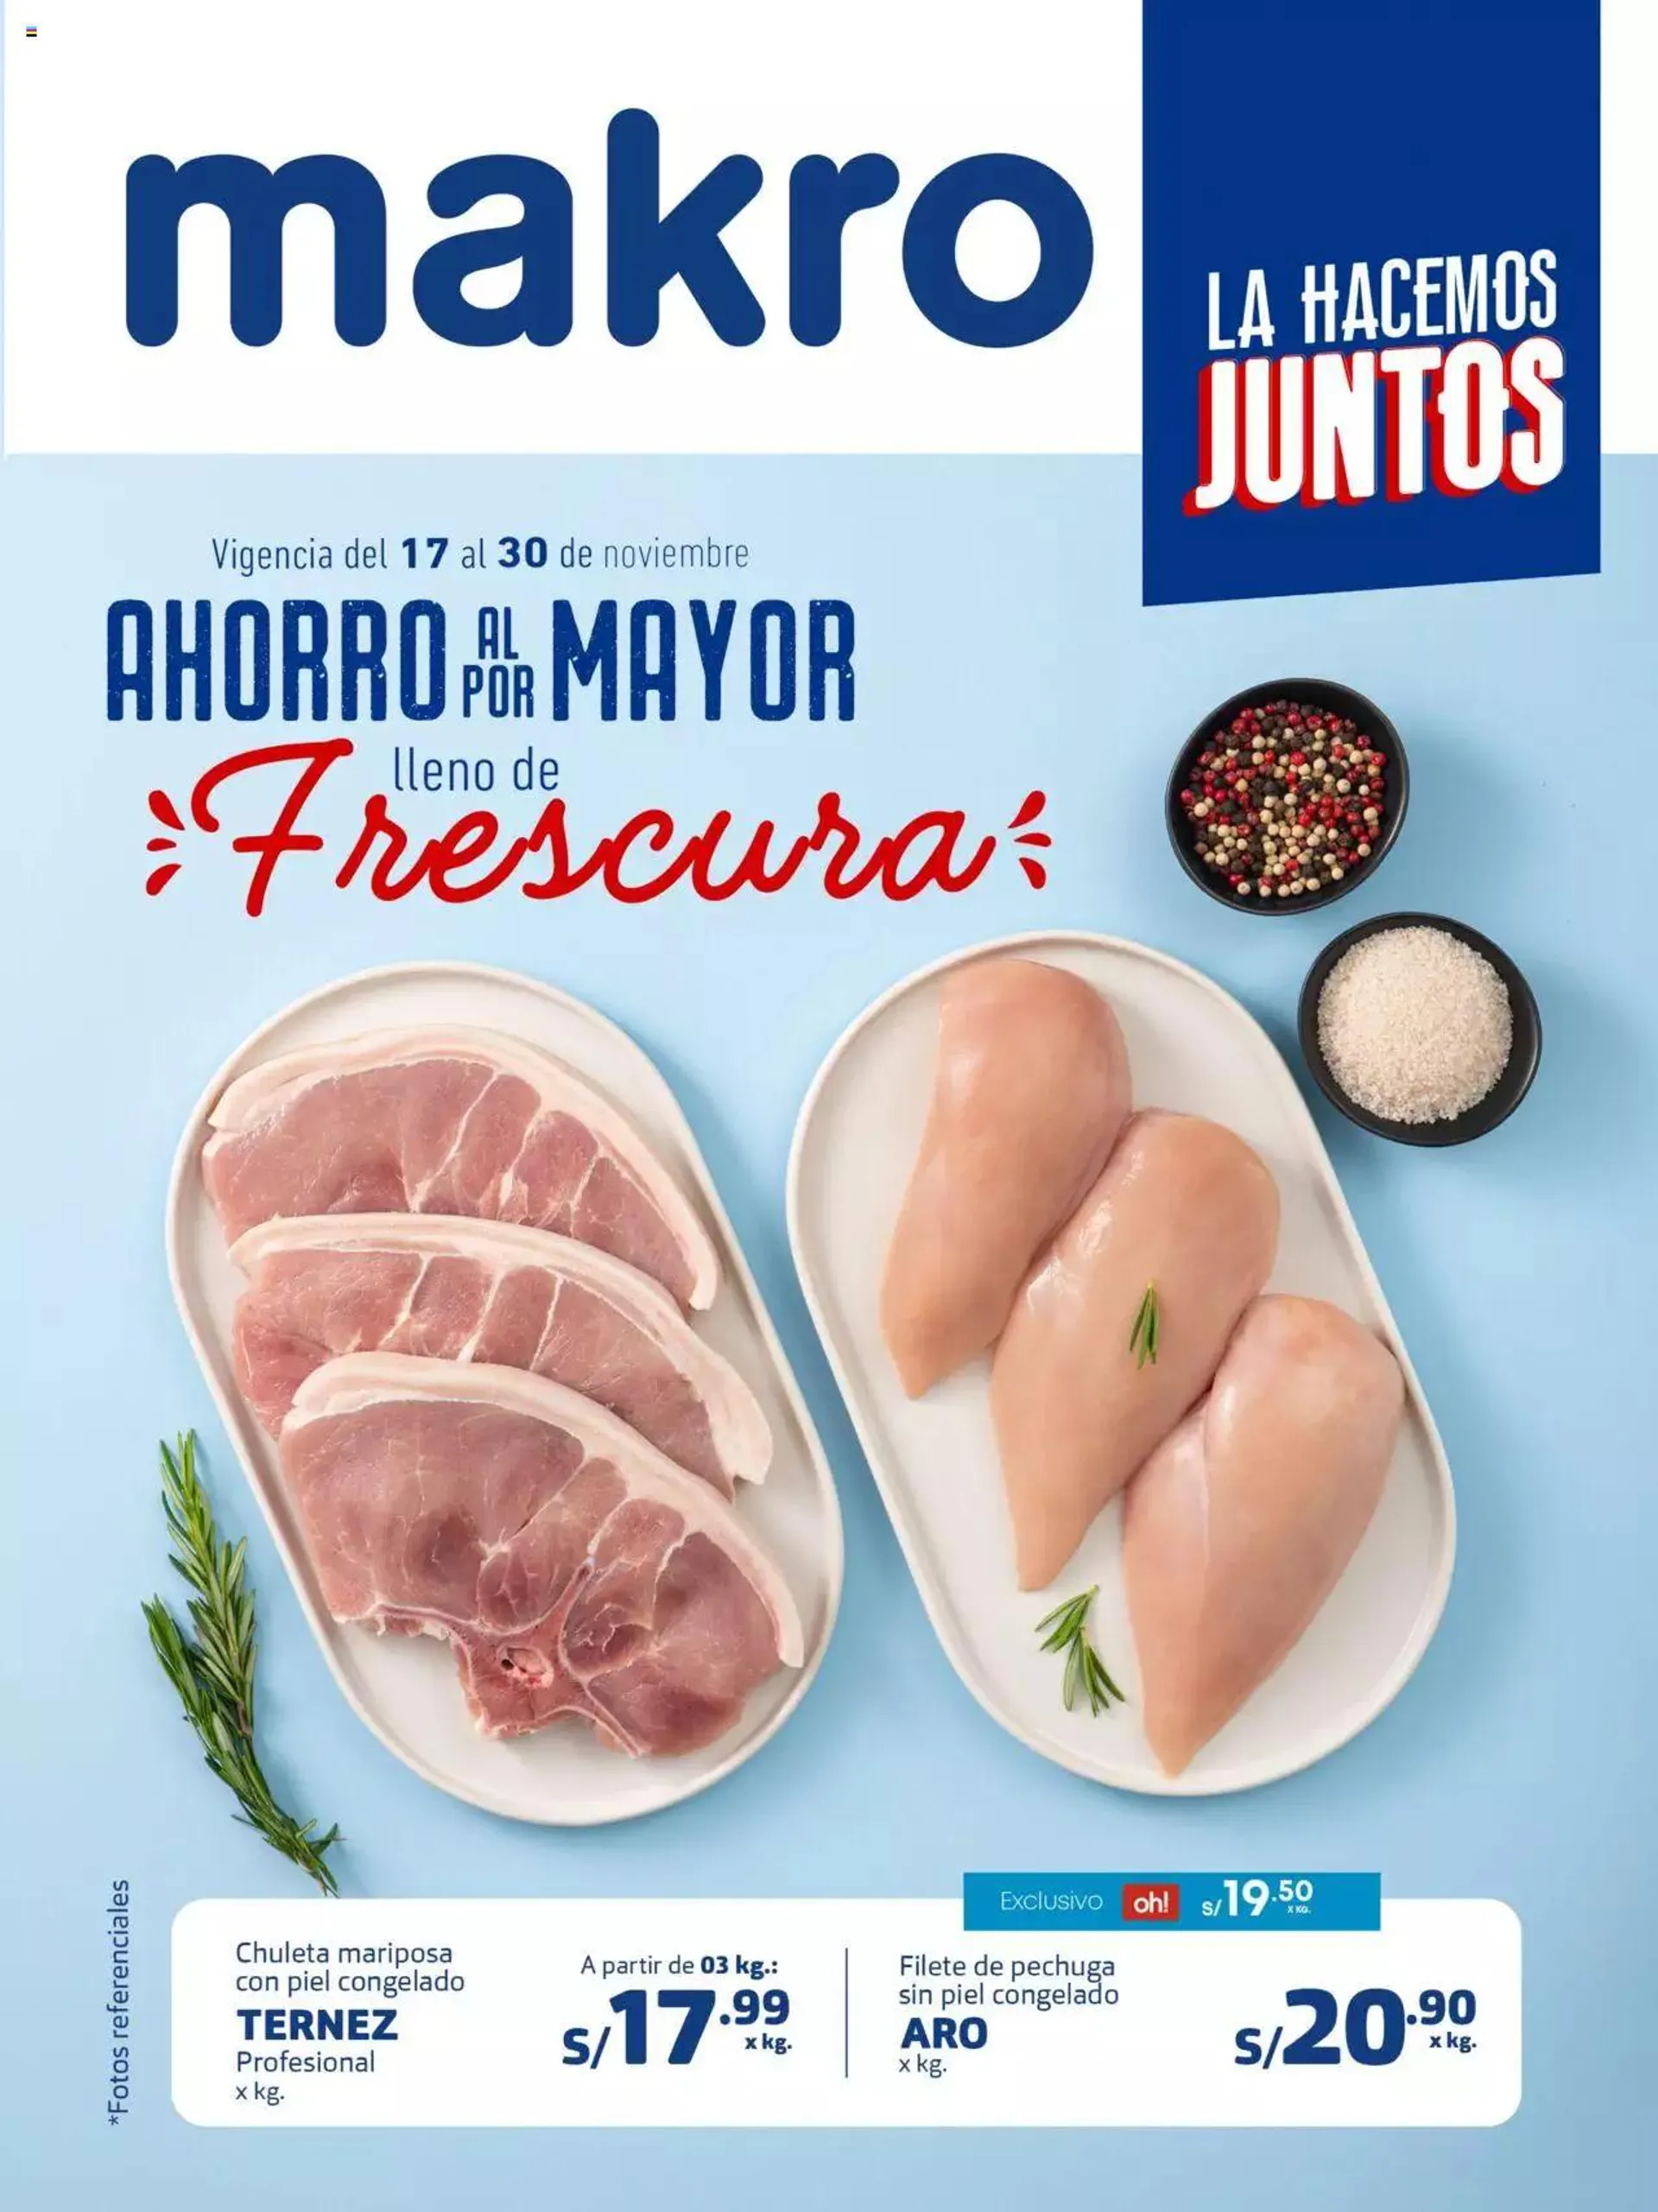 Makro - Especial Horeca Frescos - 0